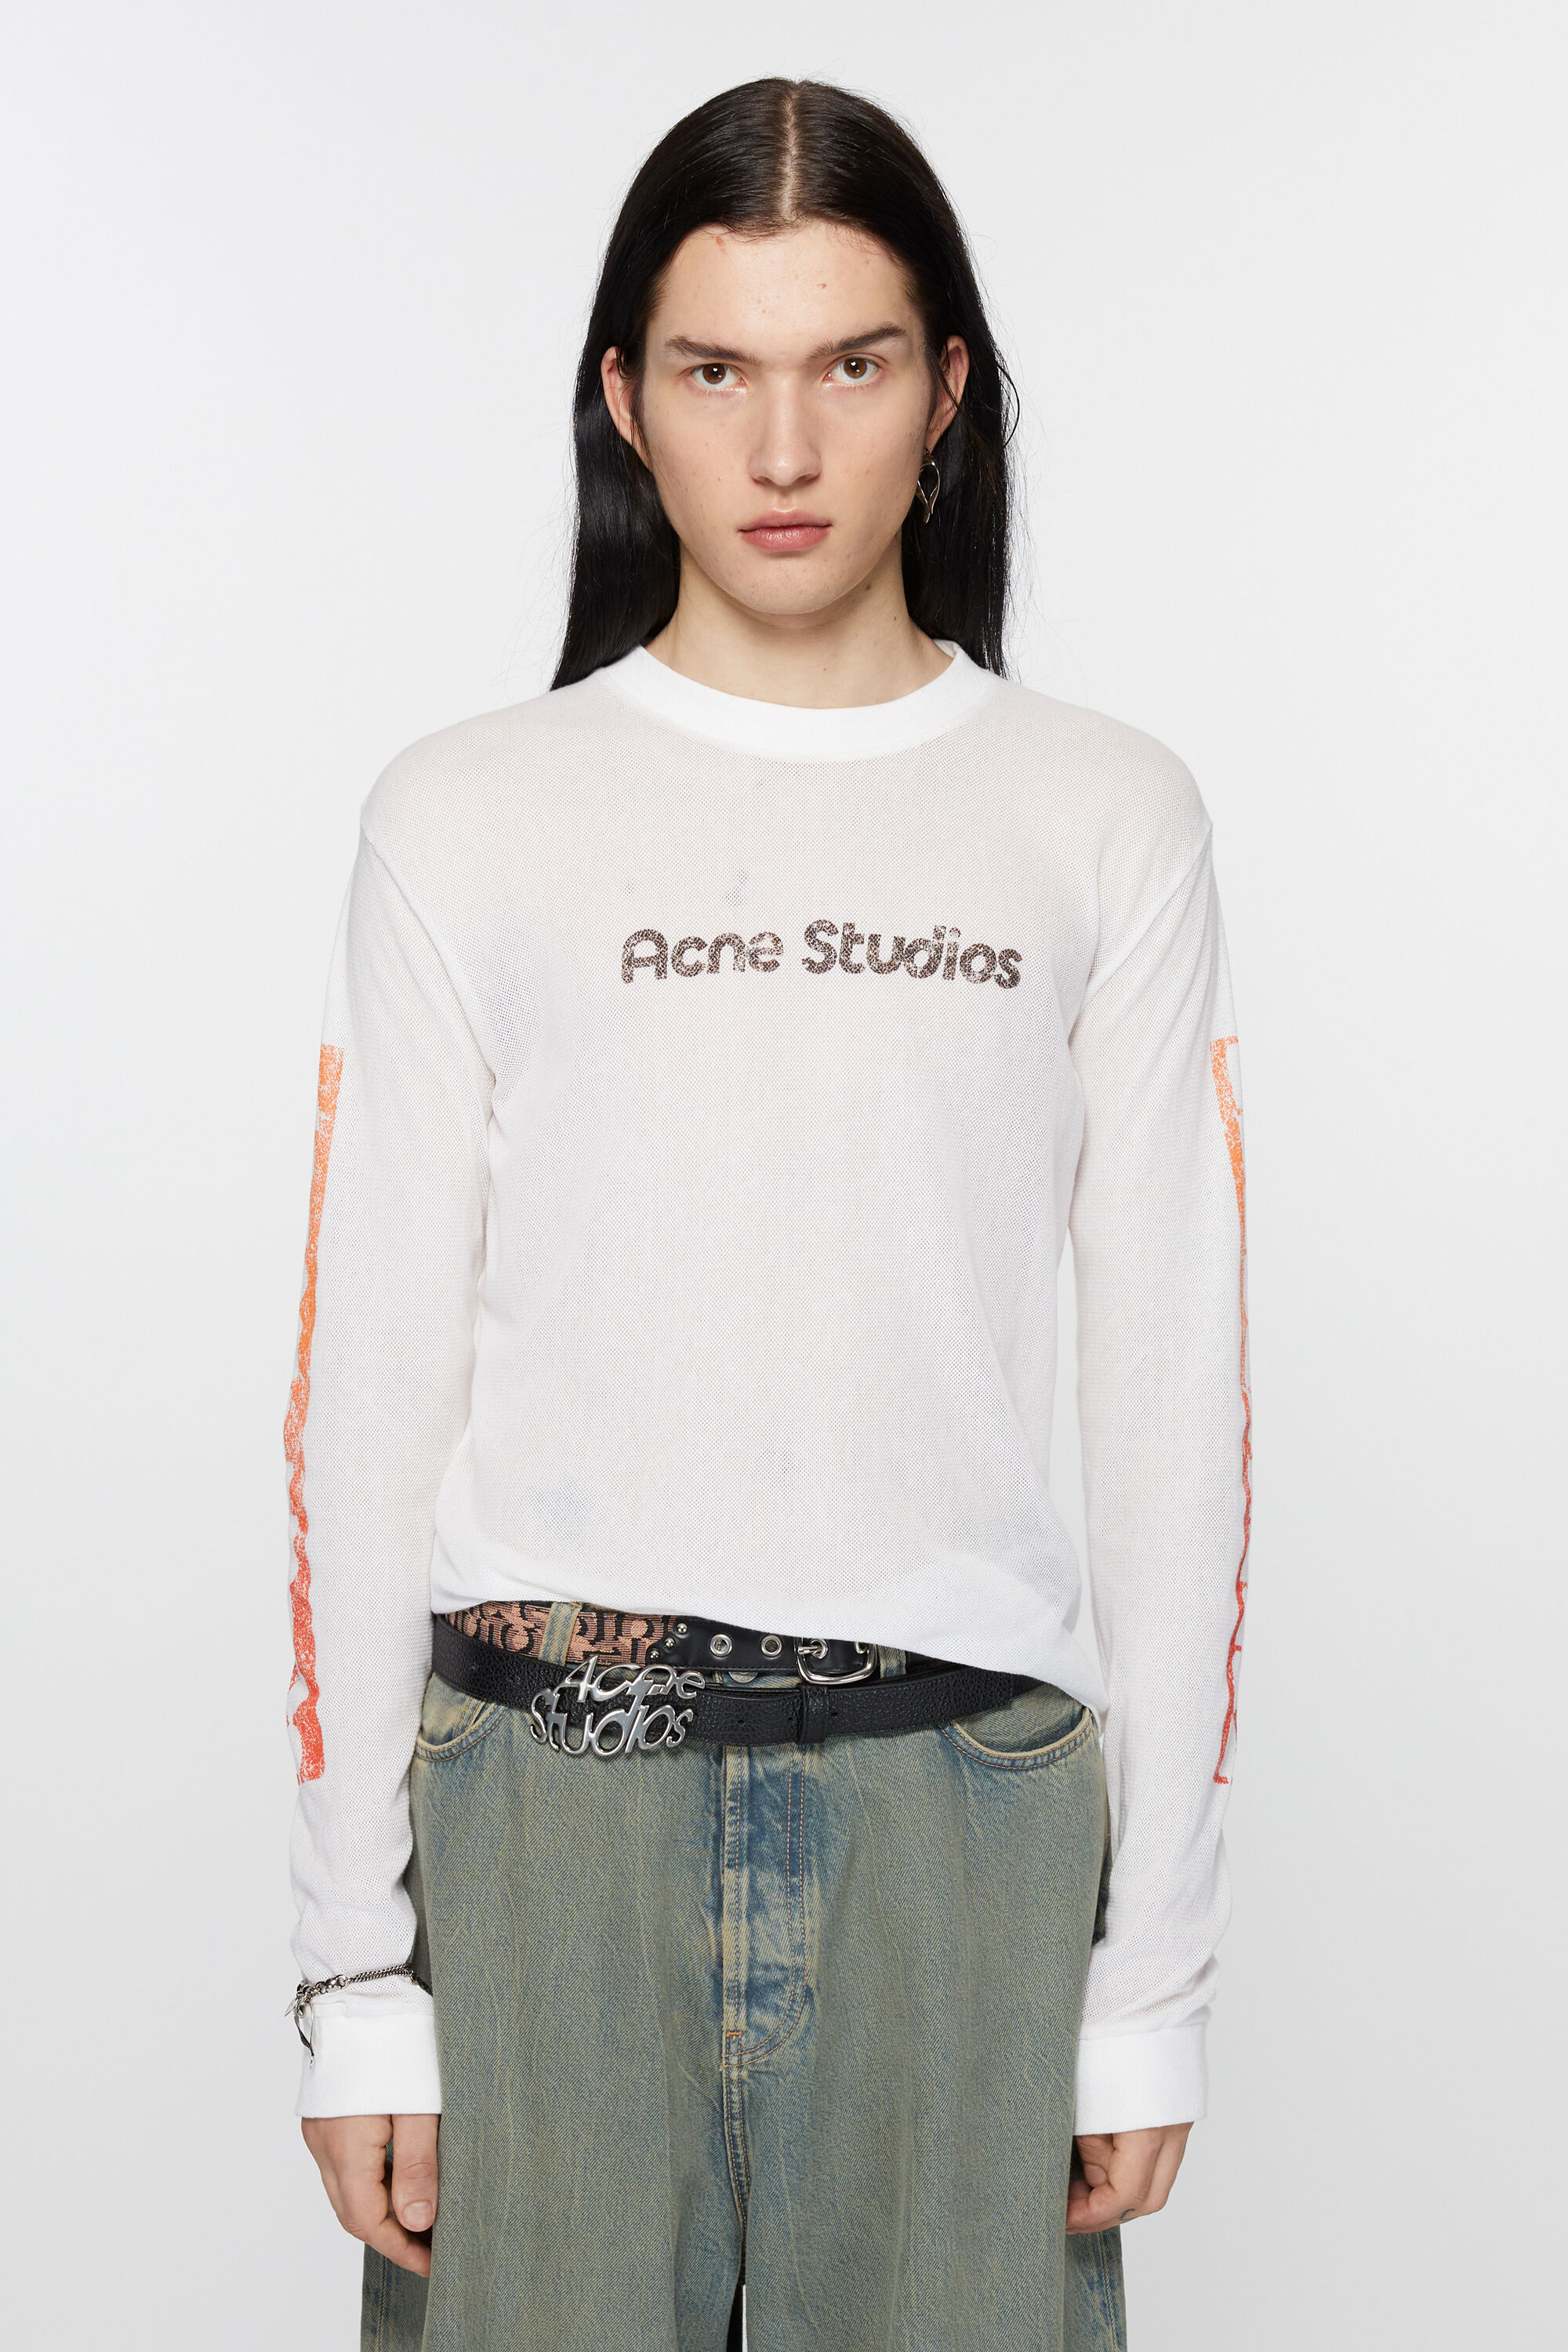 Acne Studios - ロゴ ロングスリーブTシャツ - オプティックホワイト